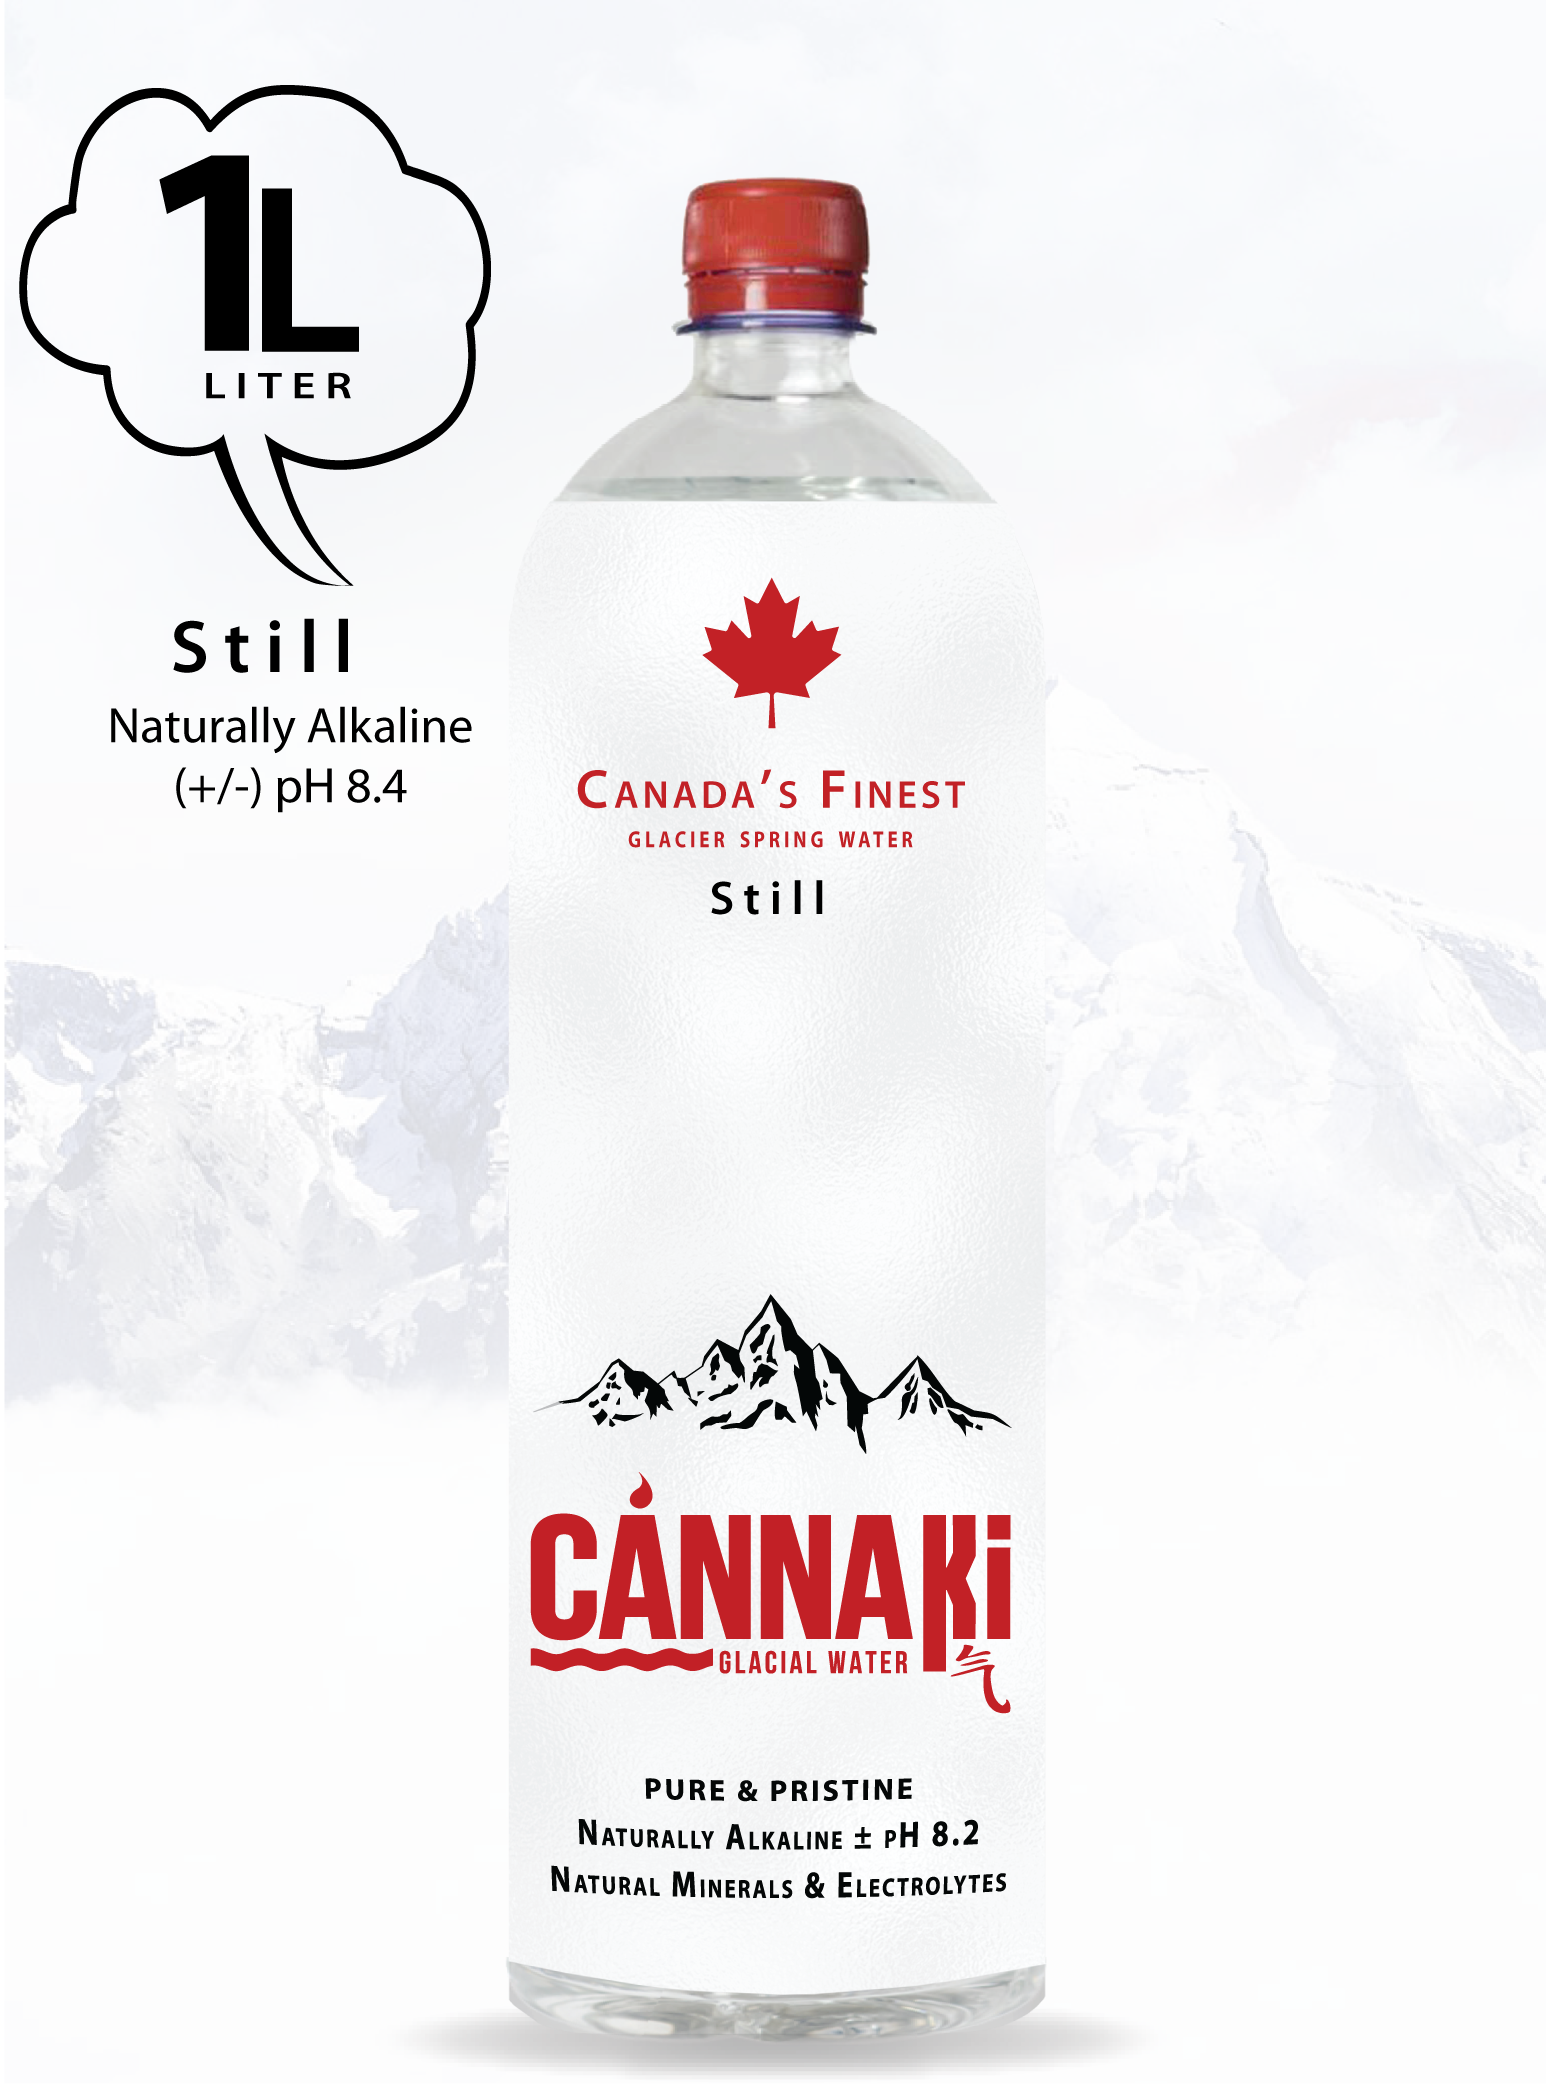 CÁNNAKi® Natural Glacial Spring Water